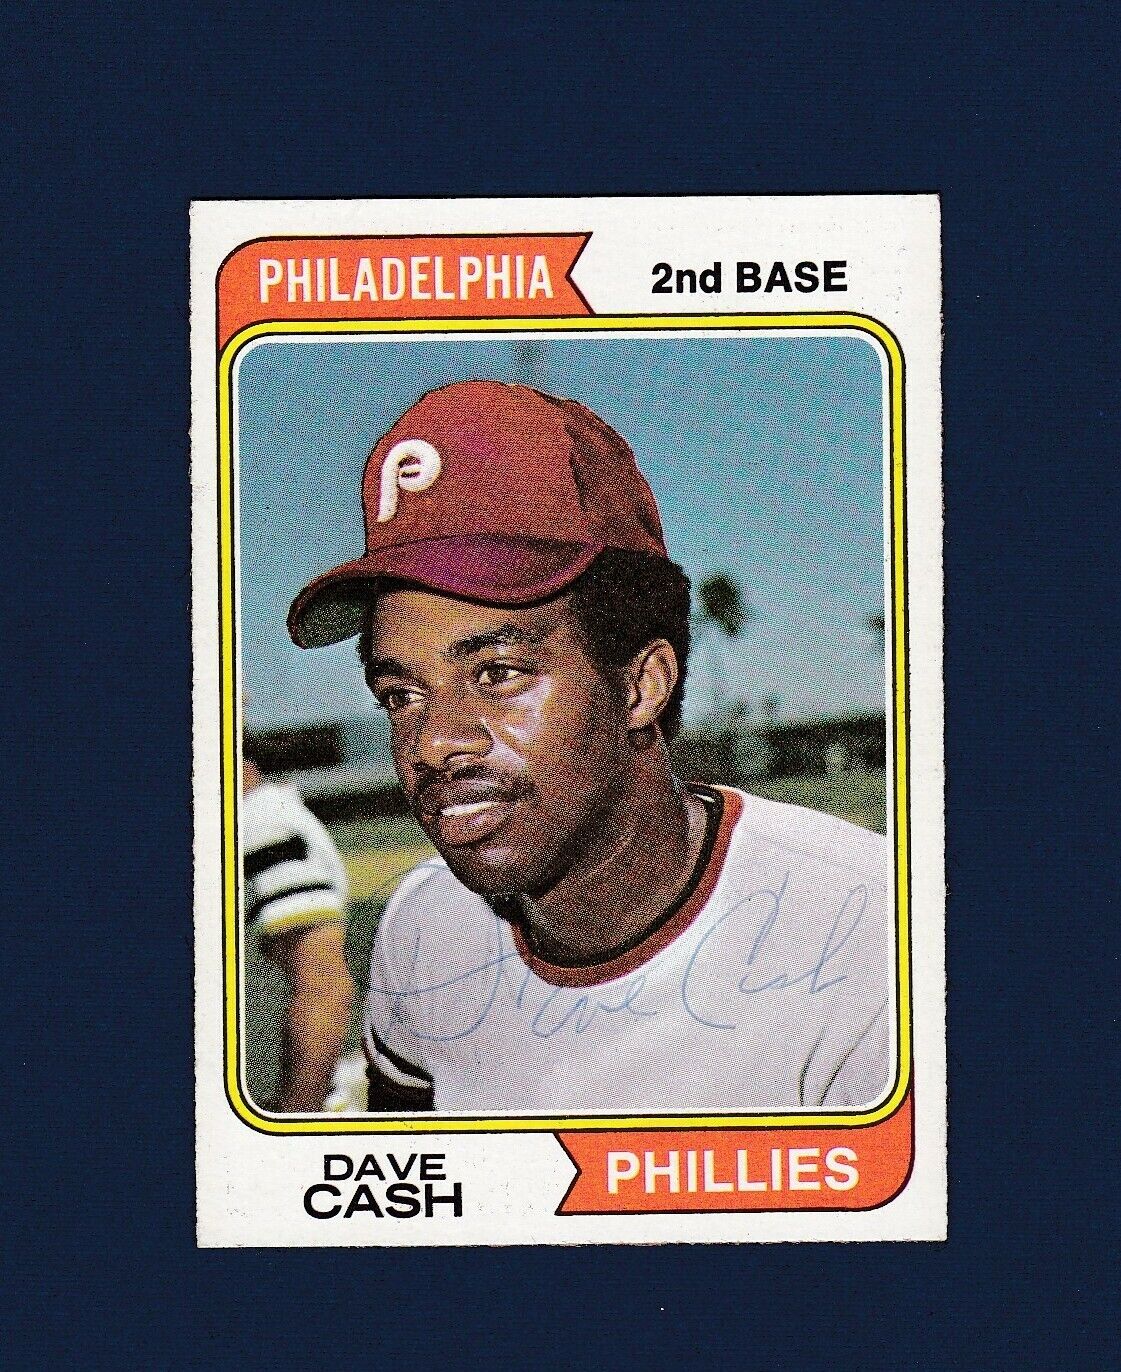 Dave Cash signed Philadelphia Phillies 1974 Topps baseball card